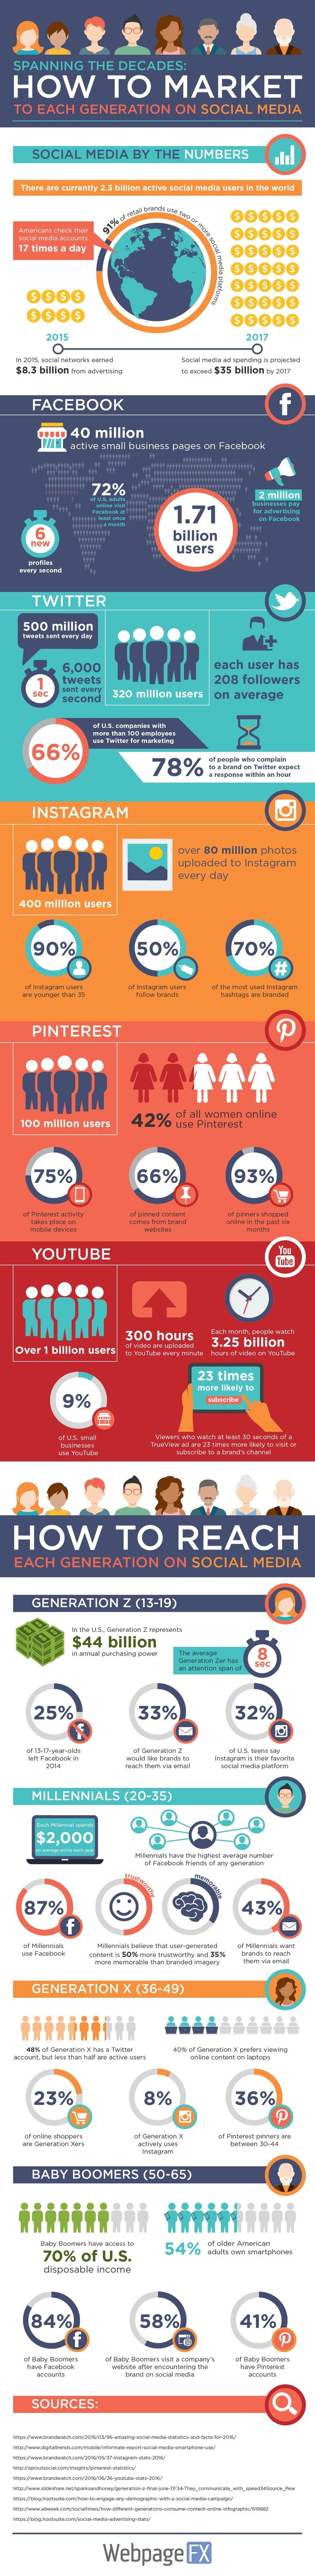 social-media-infographic-1.jpg